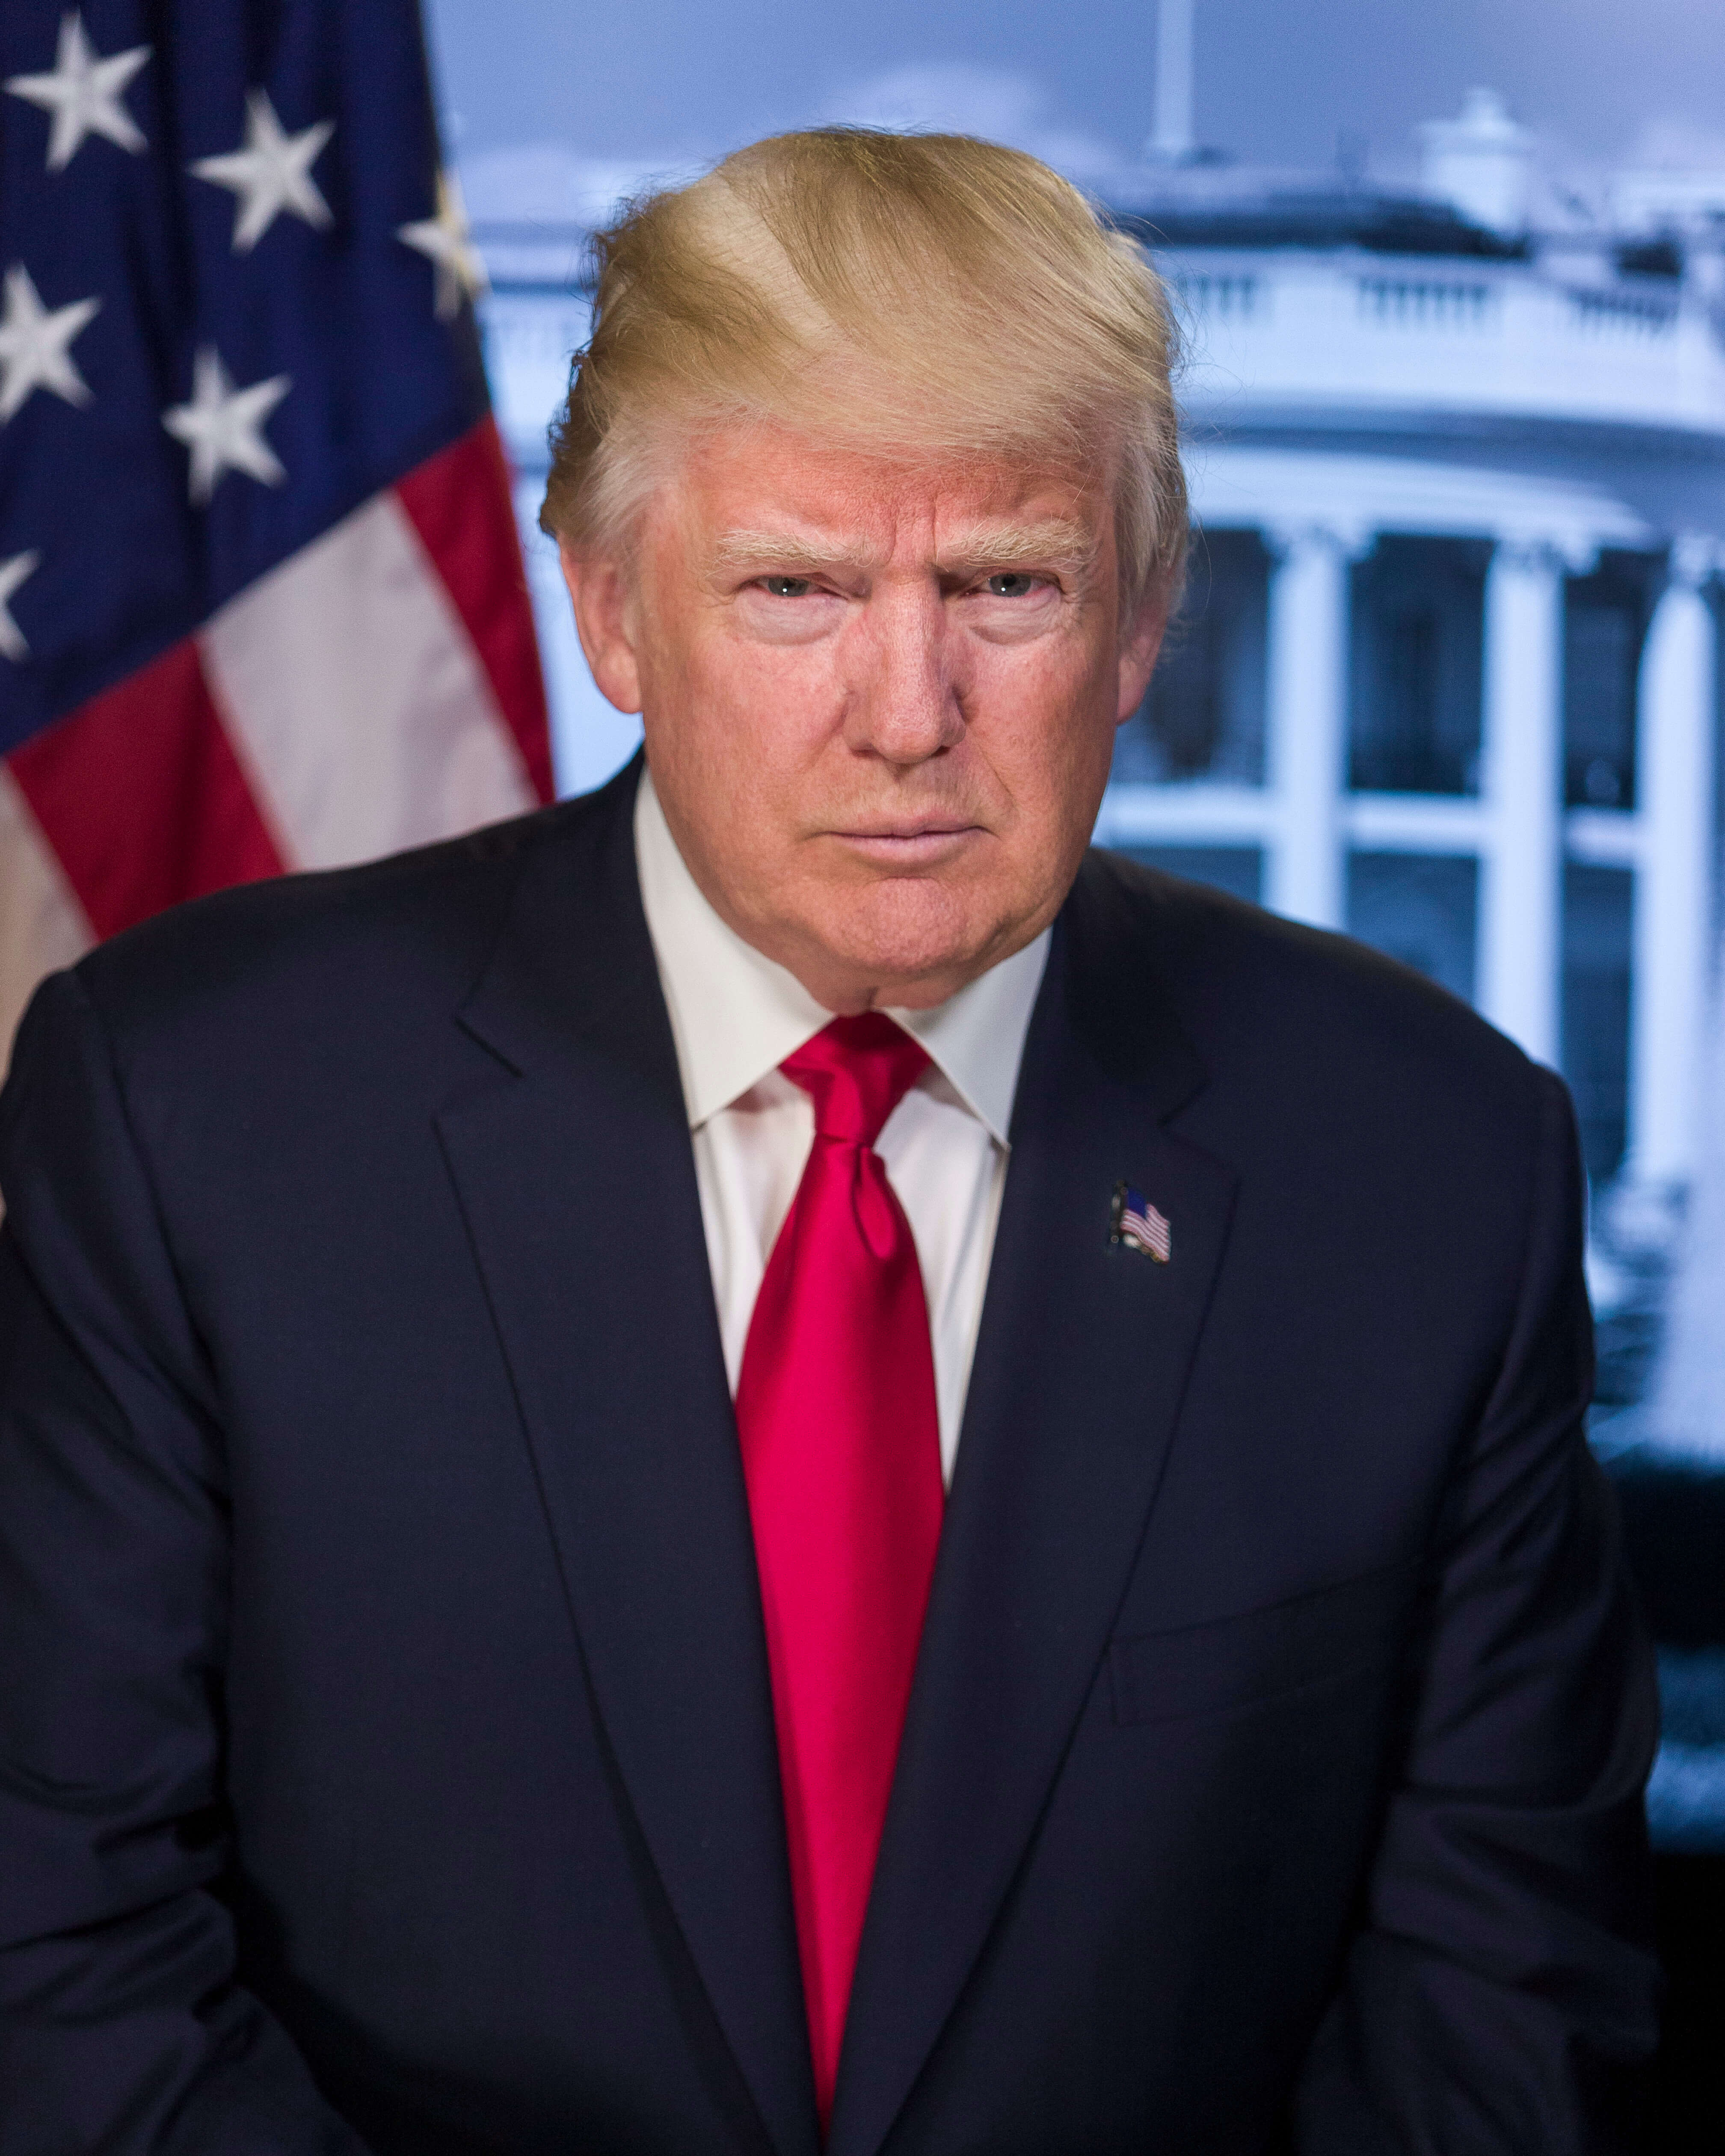 U.S. Präsident Donald Trump vor dem weissen Haus